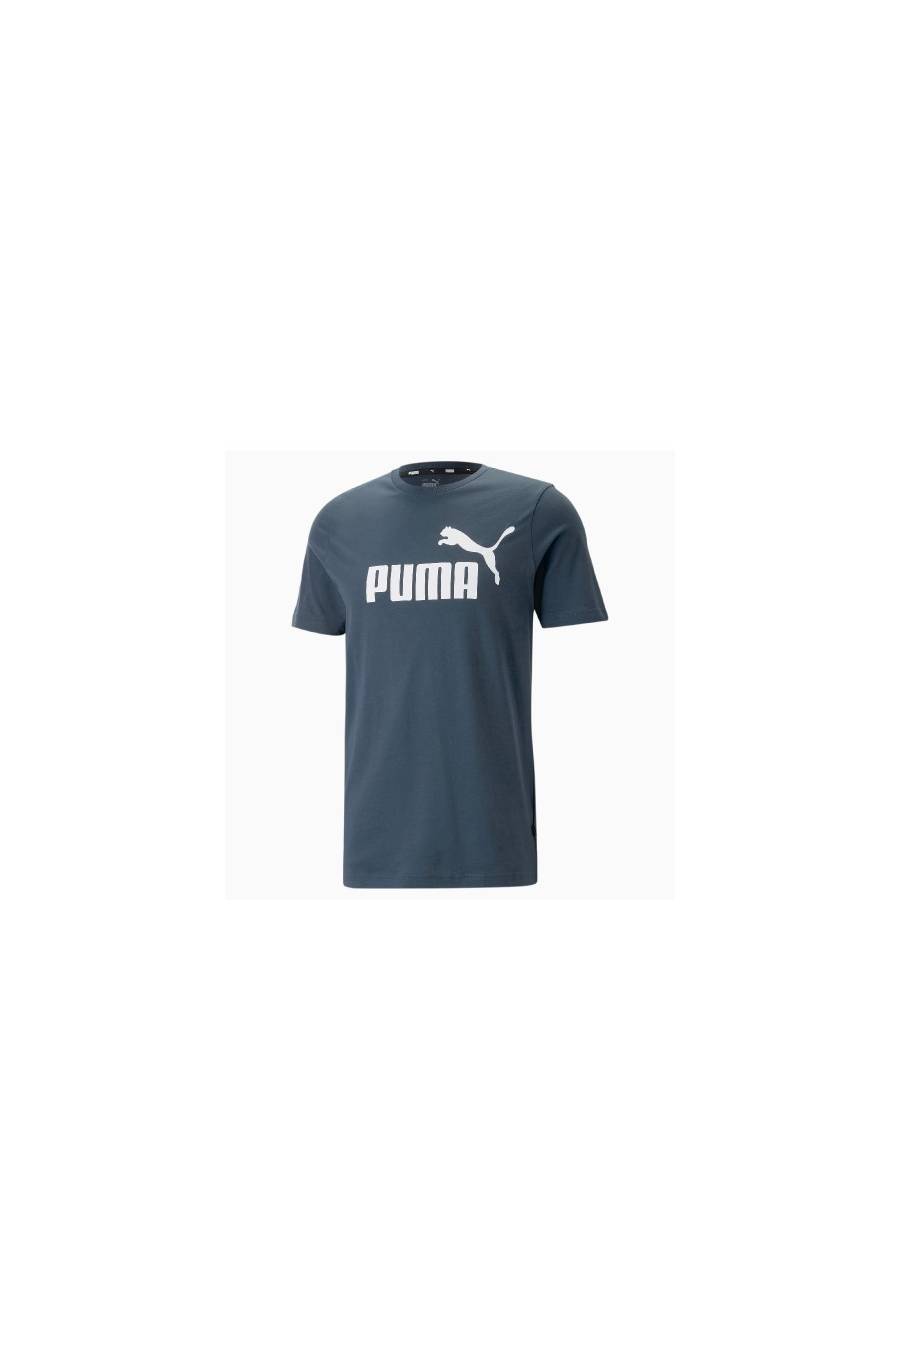 Camiseta Puma Essentials Logo 586667-61